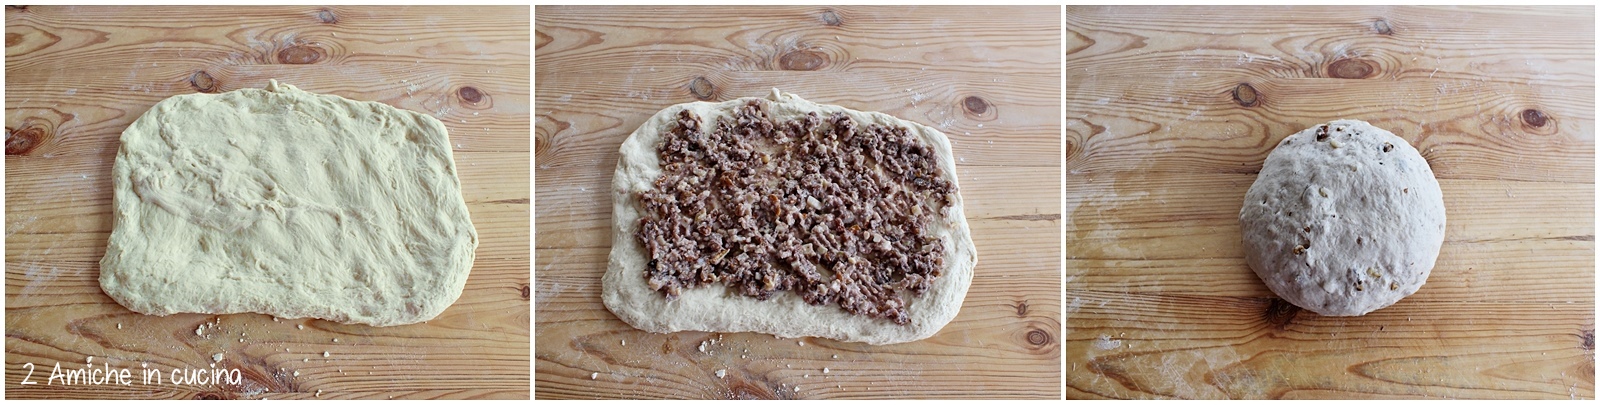 Come preparare in casa il pan nociato di Todi